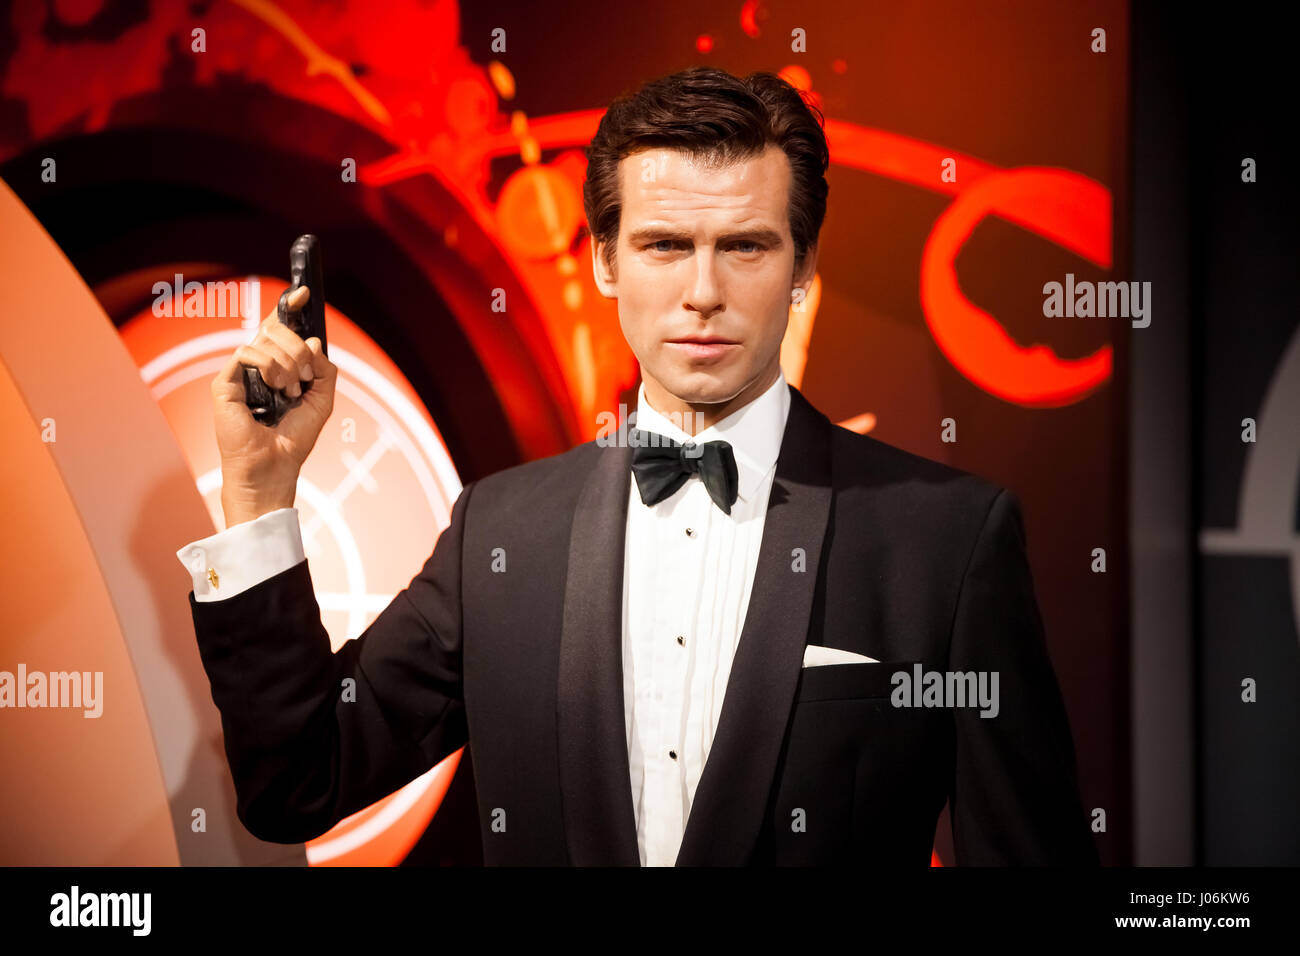 La figure de cire de Pierce Brosnan de James Bond 007 dans l'agent du musée de cire de Madame Tussauds à Amsterdam, Pays-Bas Banque D'Images